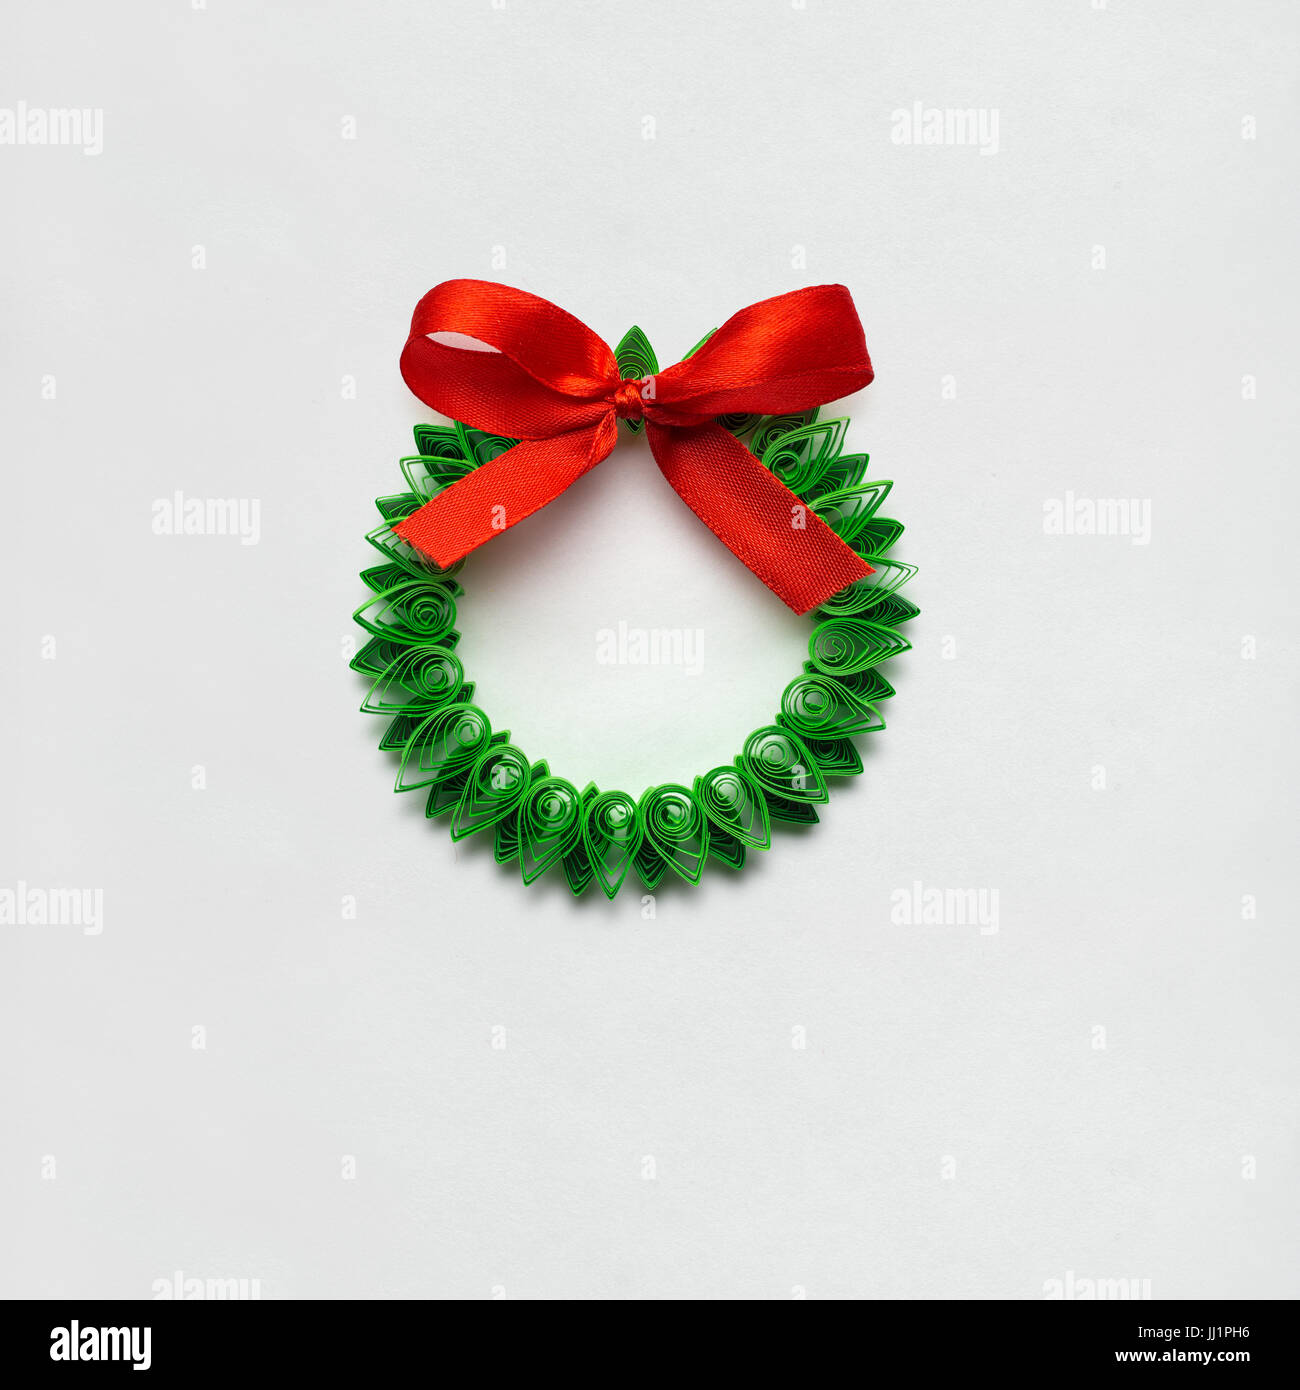 Decorazioni Natale Quilling.Carta Natale Quilling Immagini E Fotos Stock Alamy